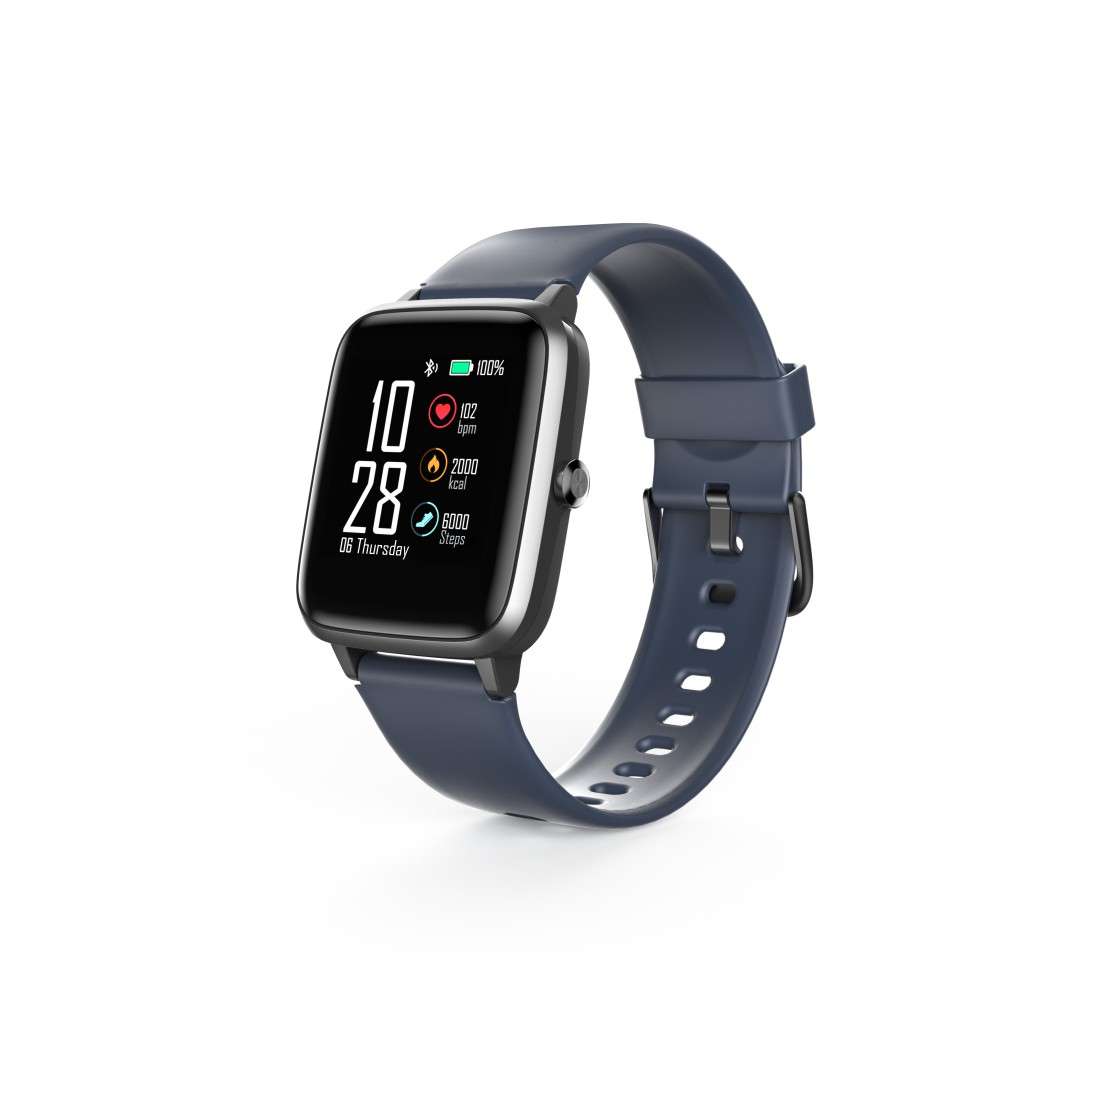 HAMA Smartwatch Fit Watch 4900, wasserdicht, Schritte, Herzfrequenz, Kalorien